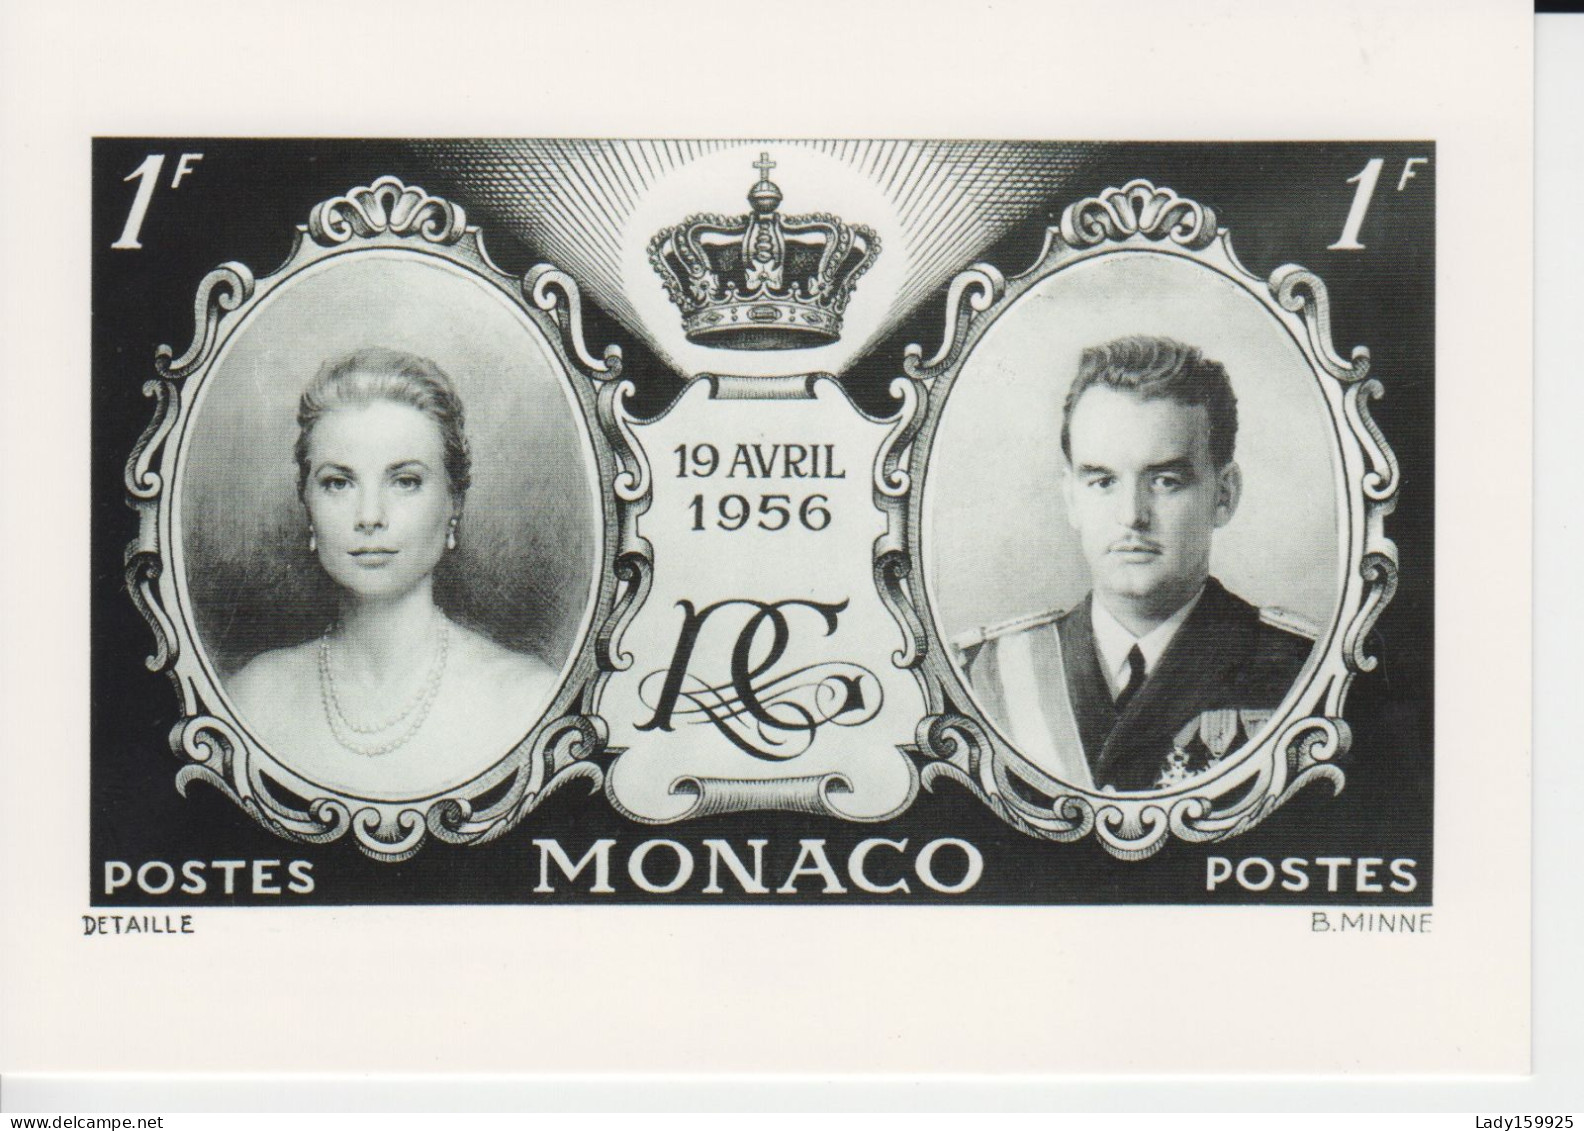 Monaco Prince Rainier 111 Et Grace Kelly 19 Avril 1956 Mariage  Copie Du Tonbre De 1F Maintenant En Carte Postale  2 - Case Reali